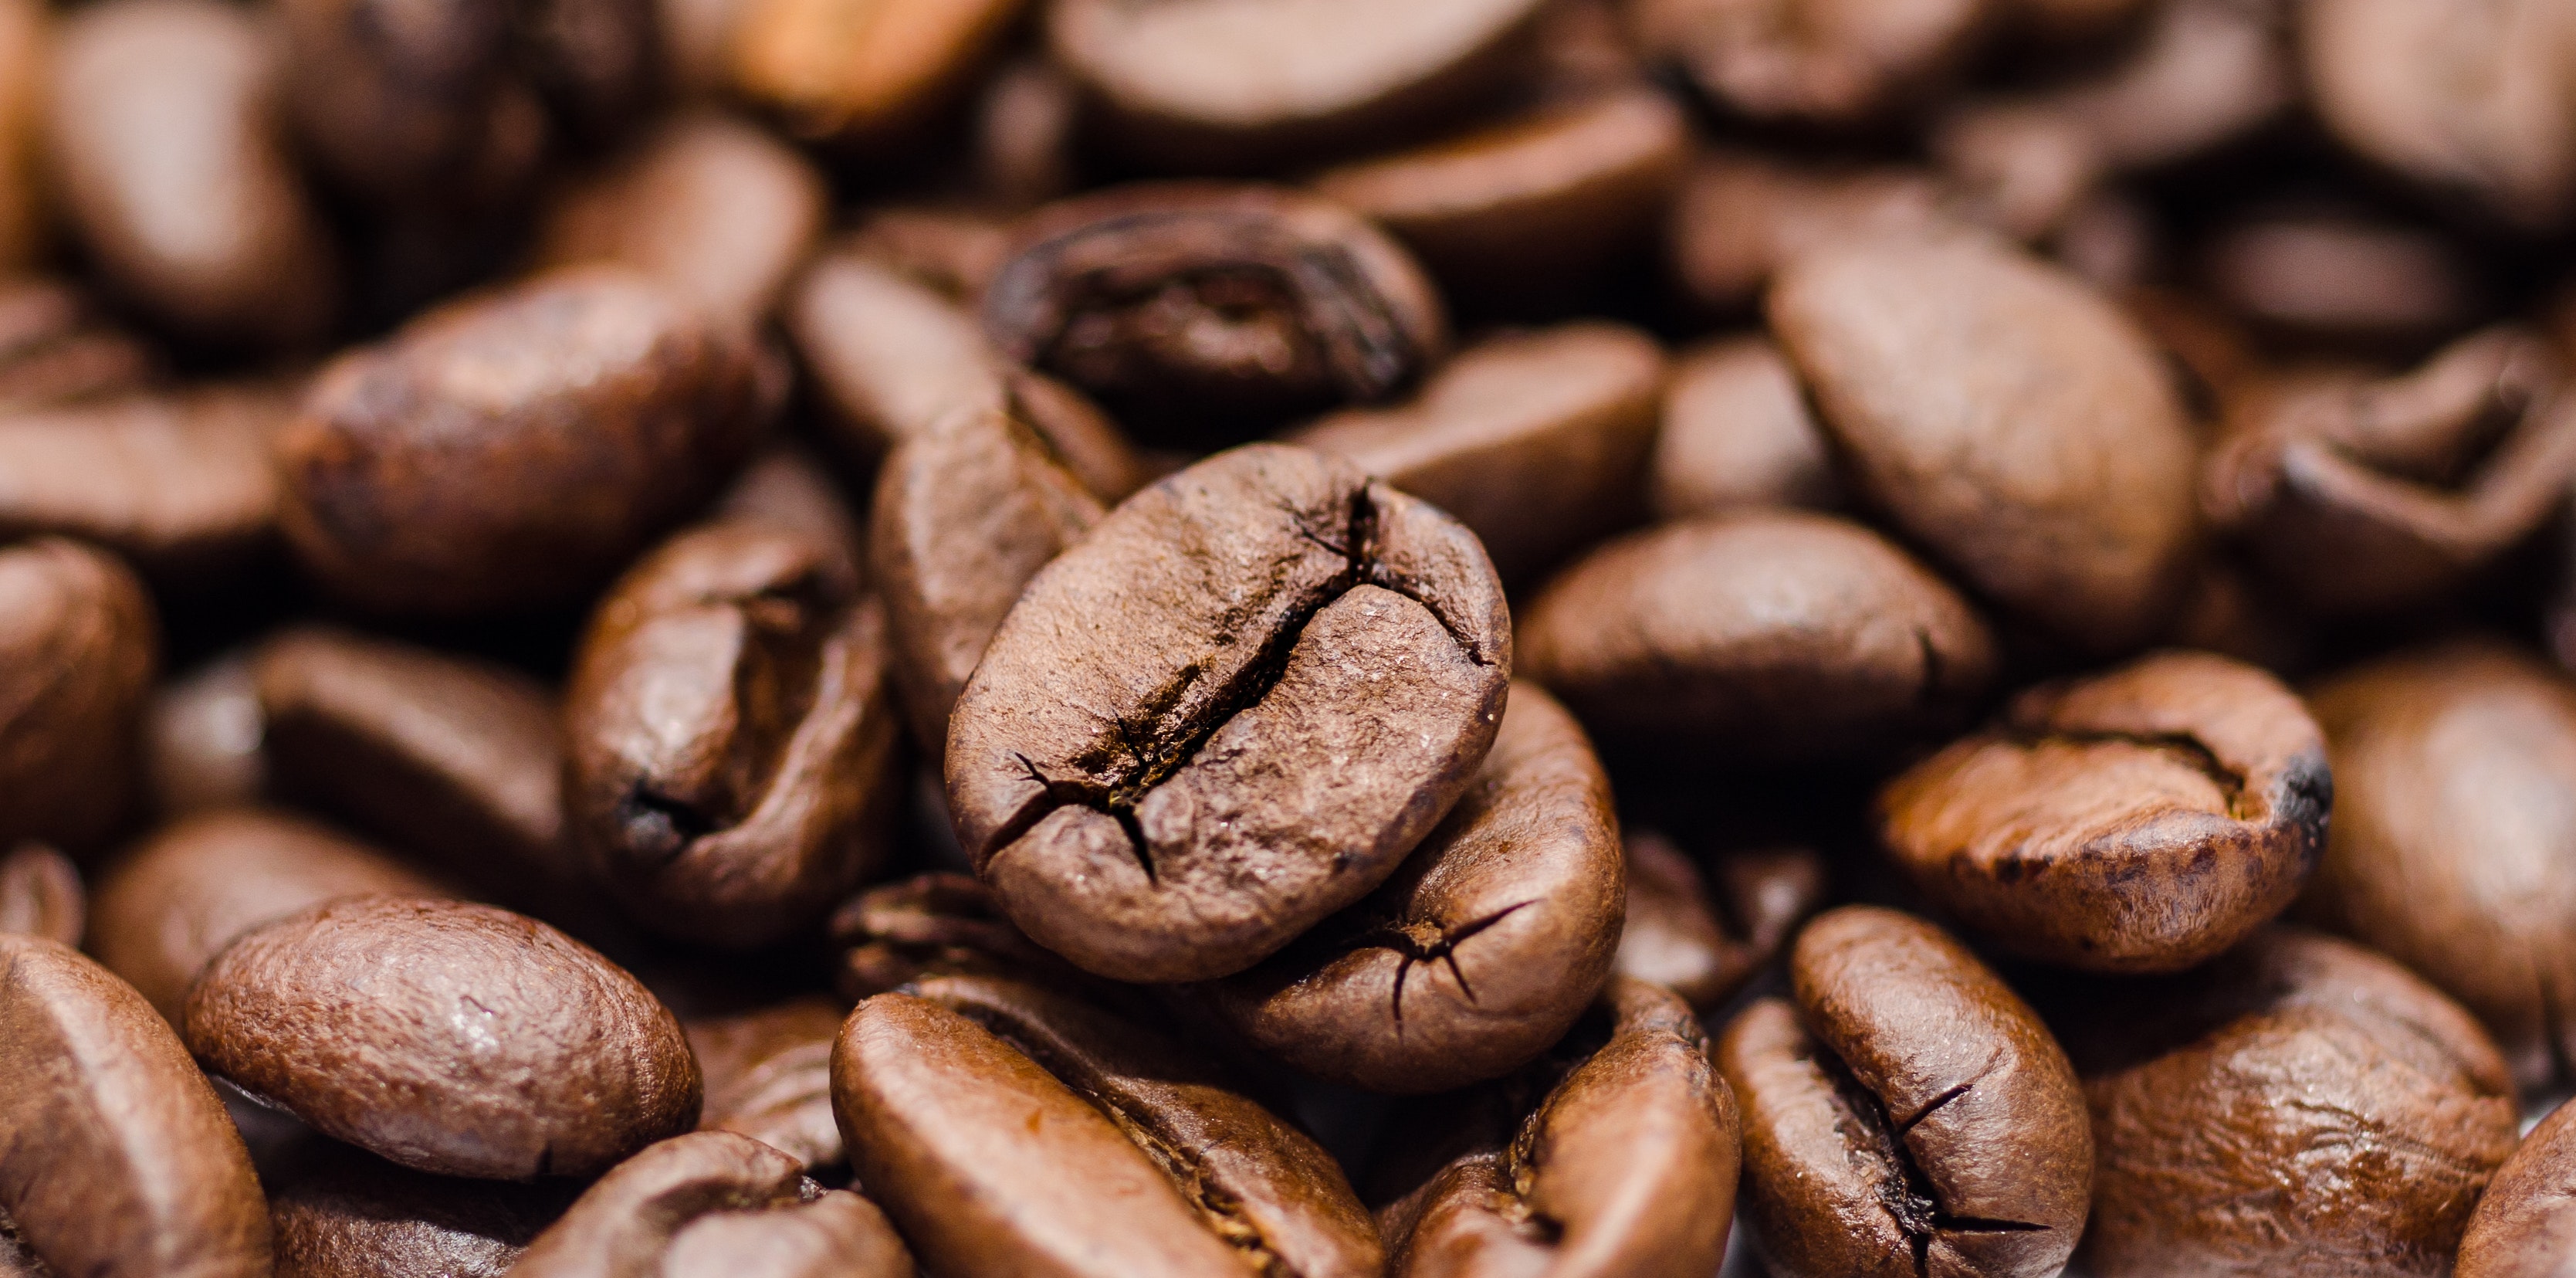 beans-brown-coffee-9186.jpg